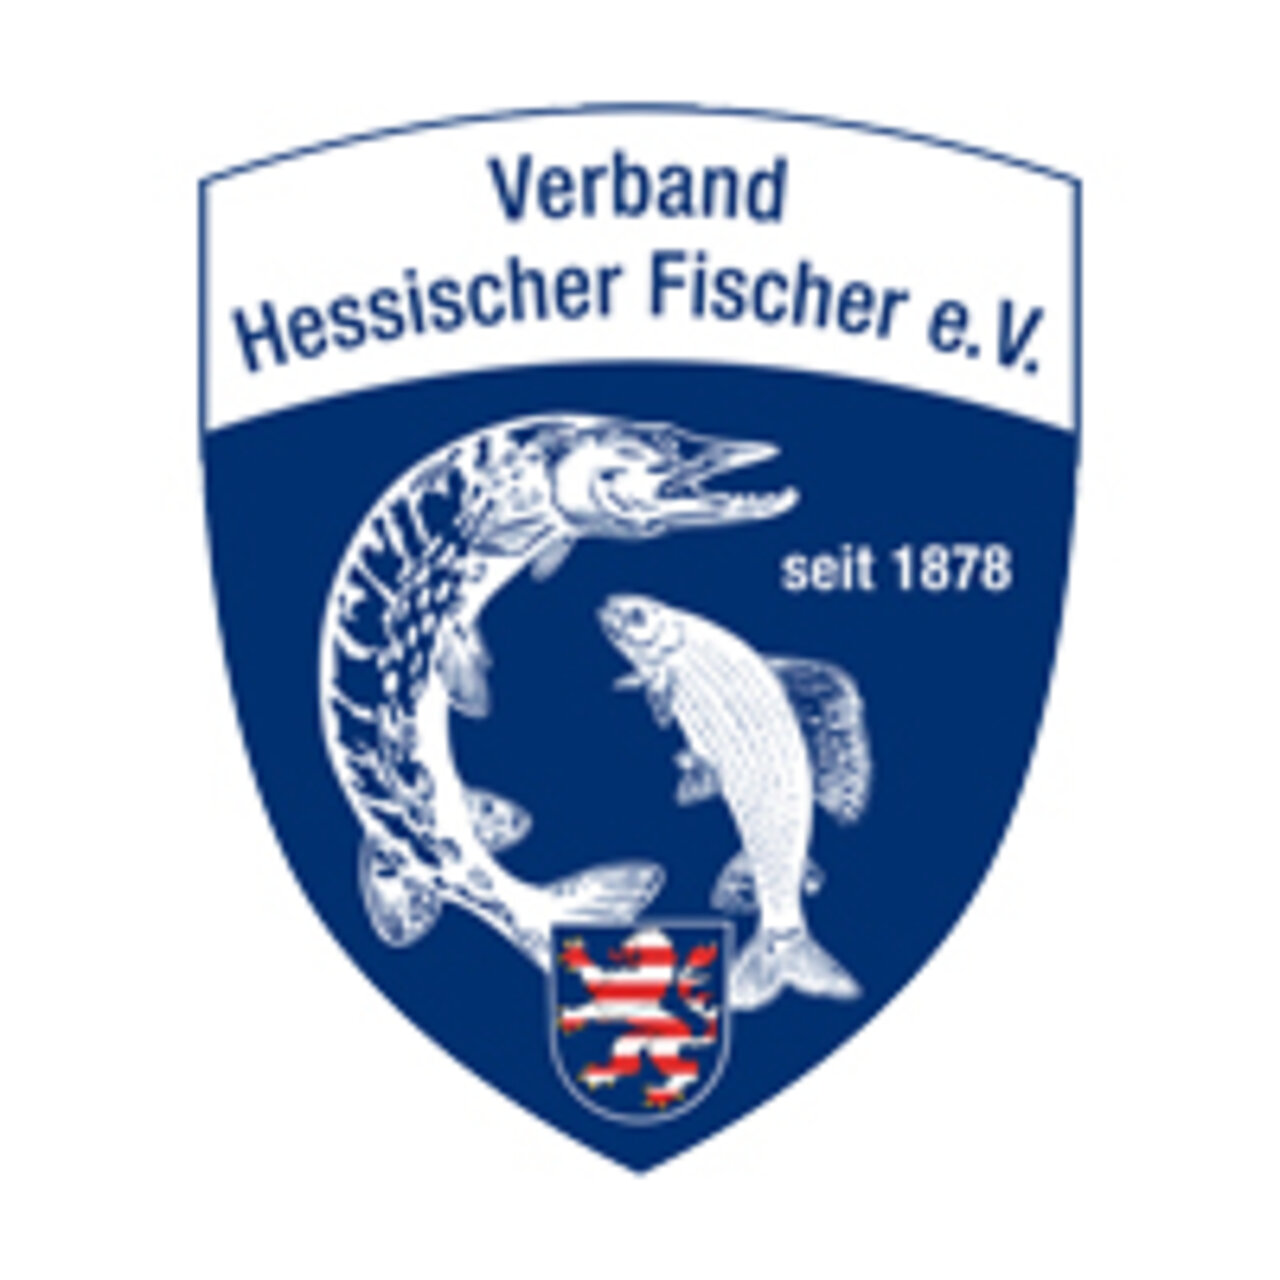 Verbandslogo Verband Hessischer Fischer e.V.